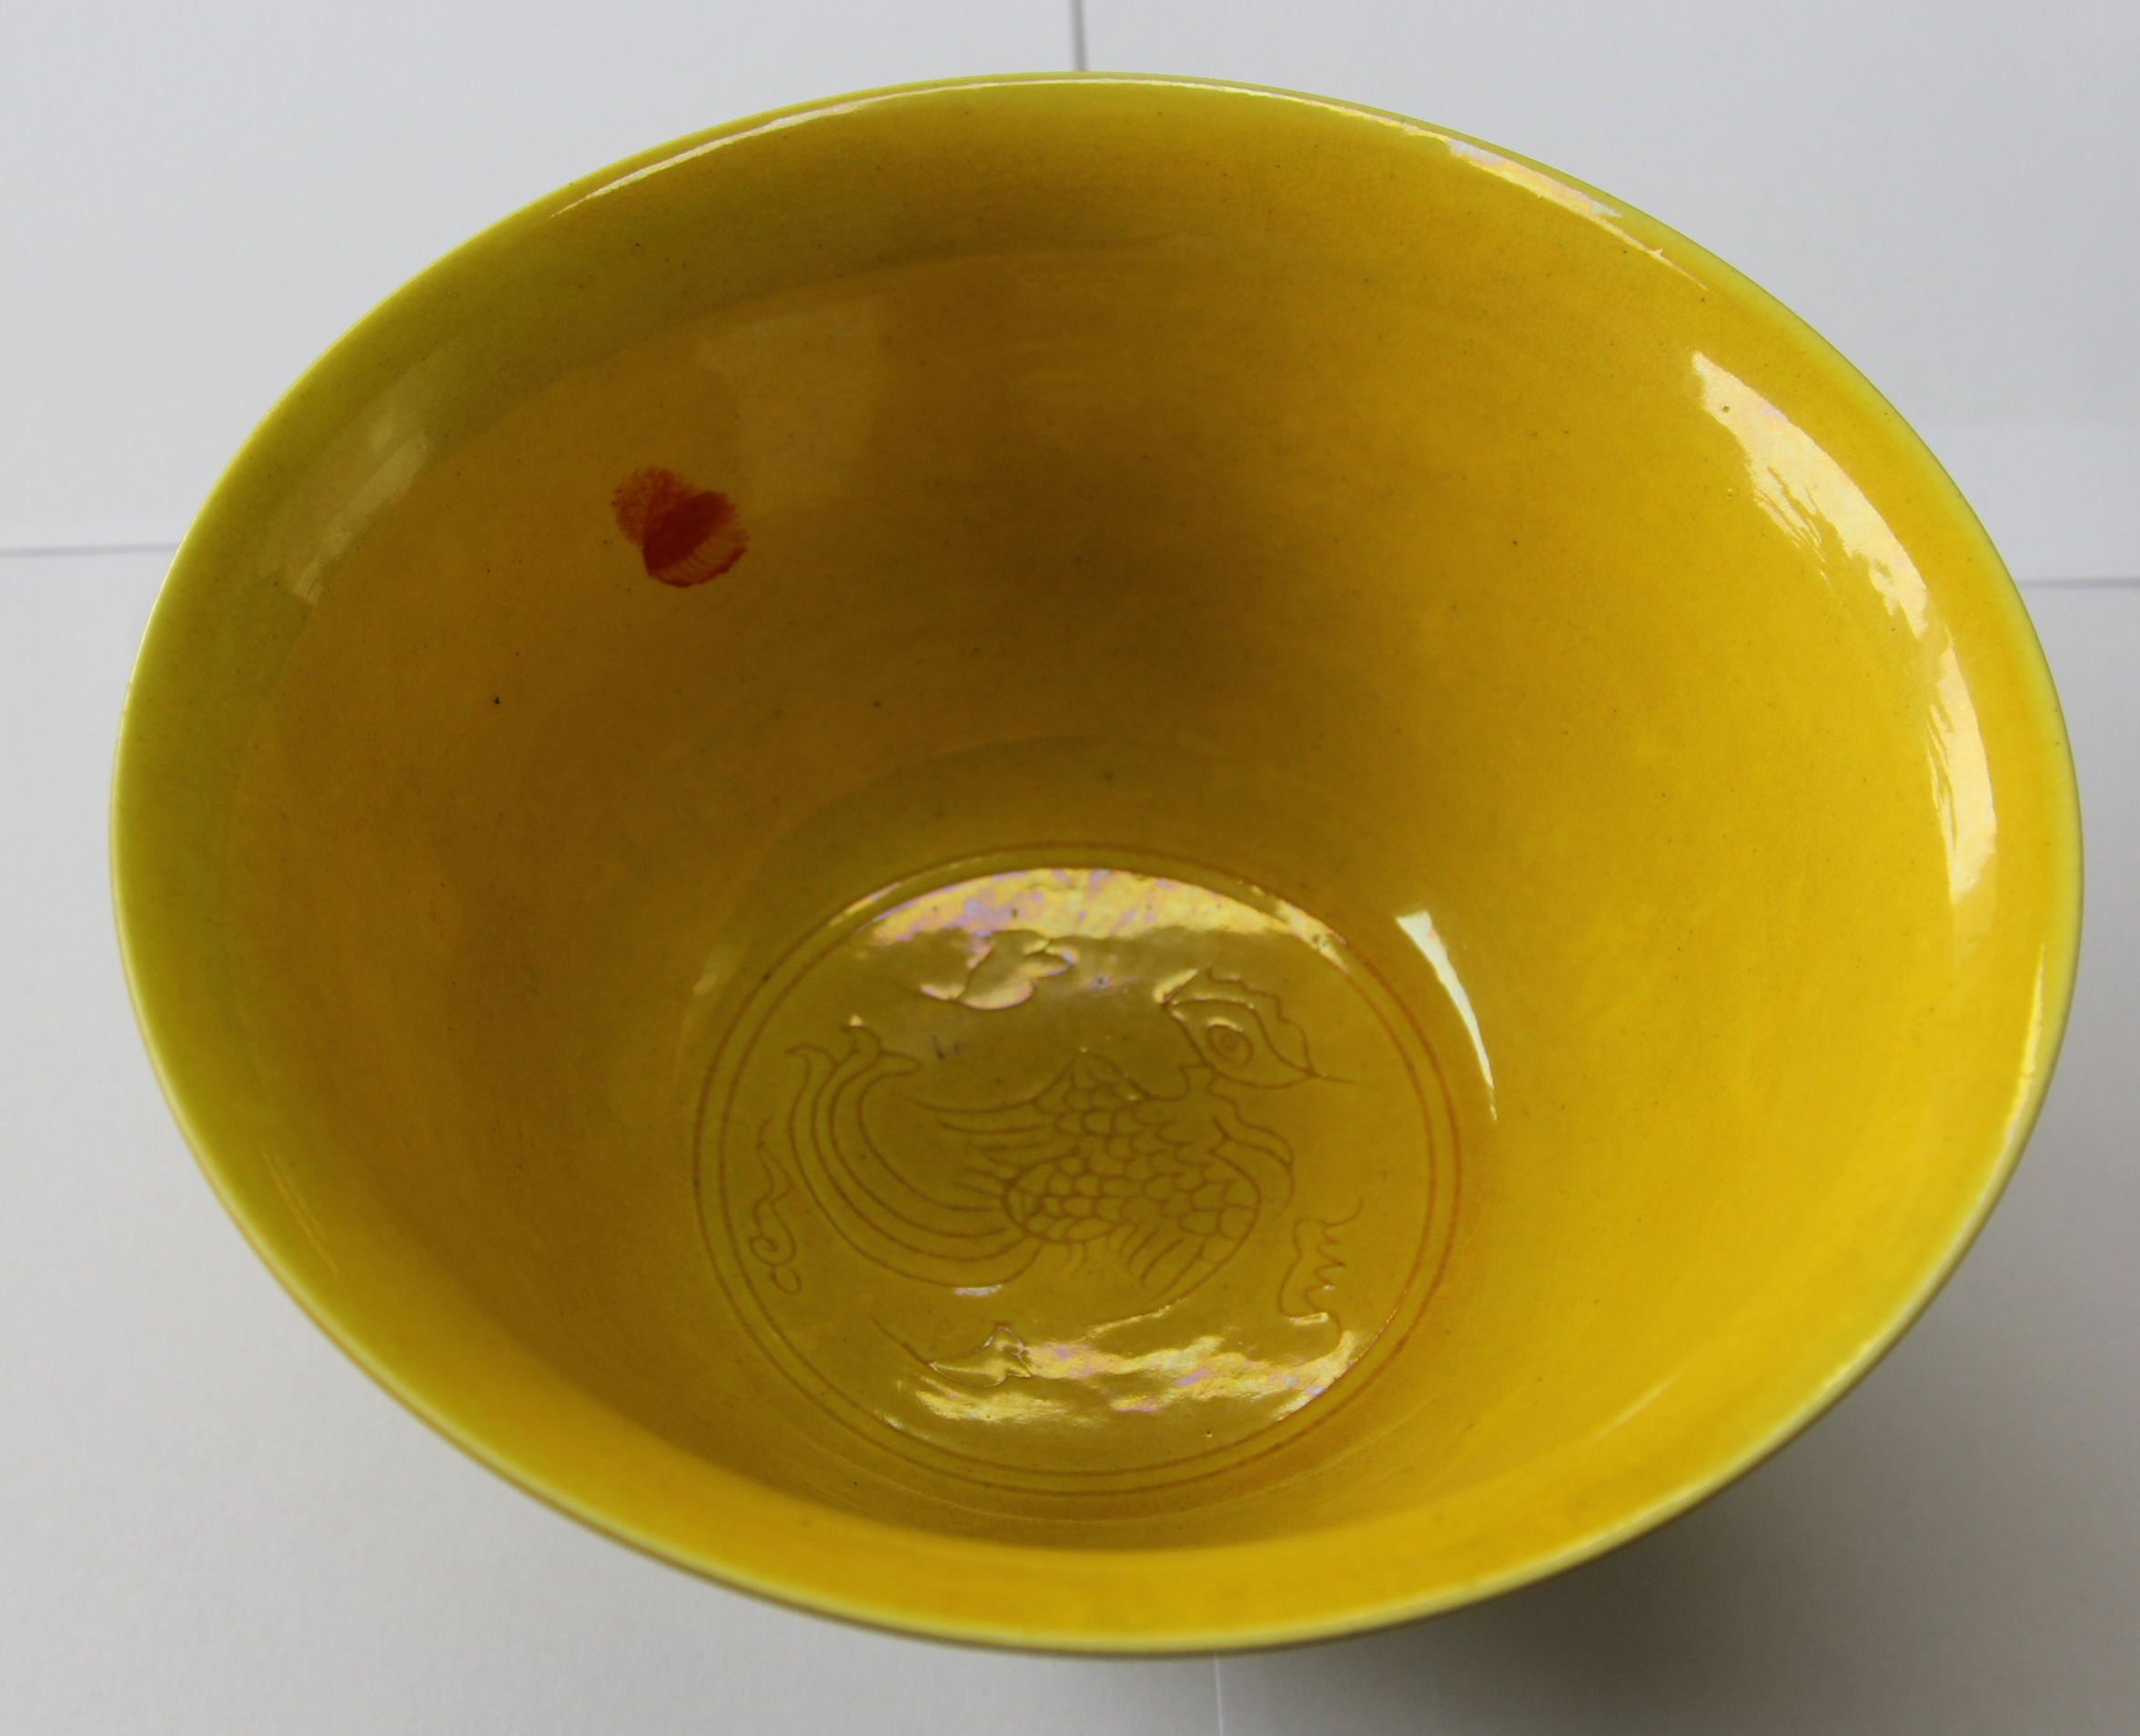 故宫博物院弘治黄釉碗图片